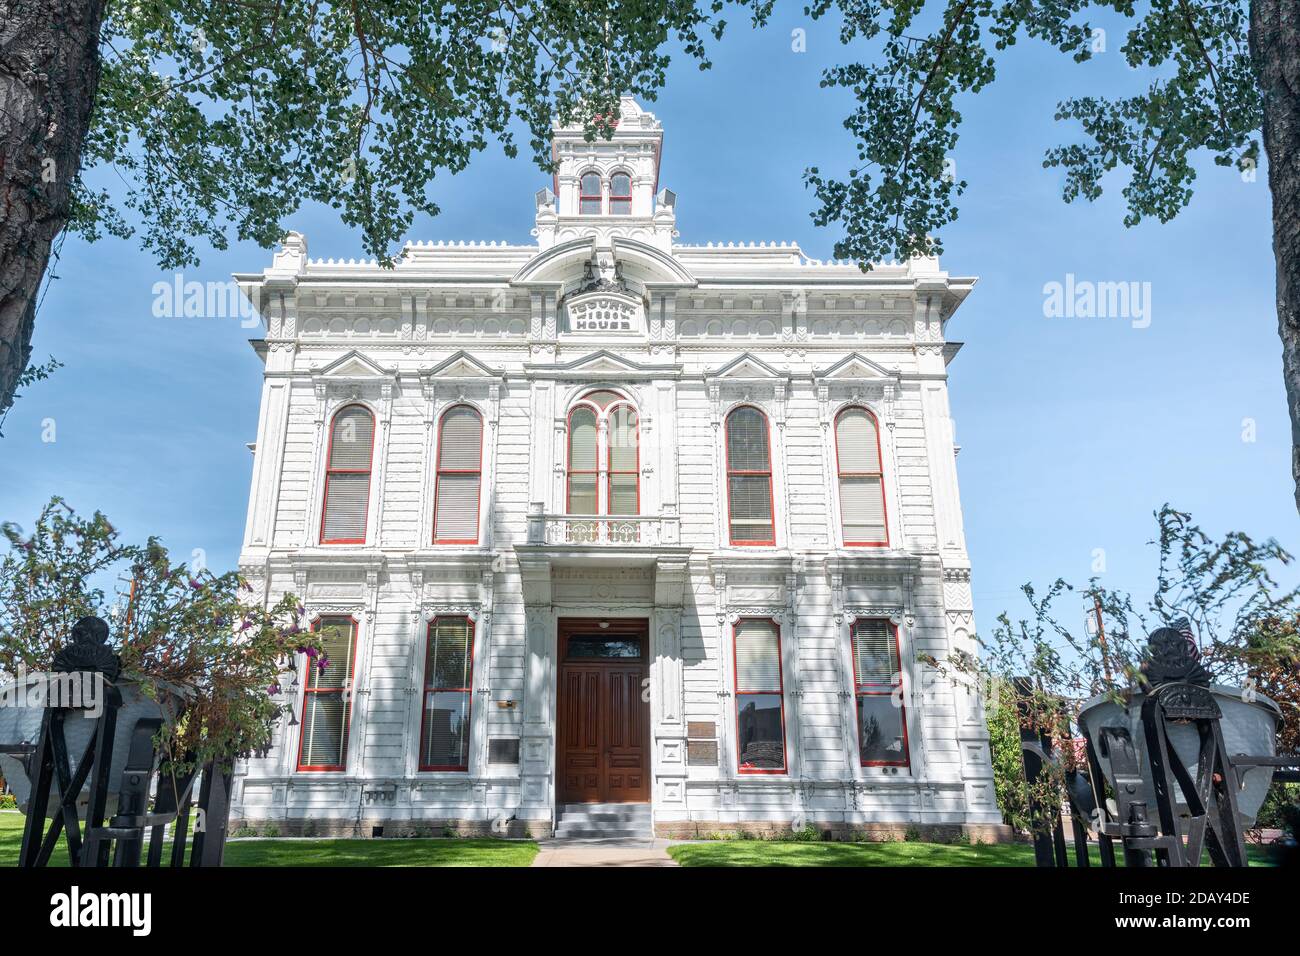 Bridgeport, CA, USA - 19. September 2017: Mono County Courthouse an der Main Street in Bridgeport, Kalifornien, ein Gebäude im italienischen Stil, erbaut 1880 Stockfoto